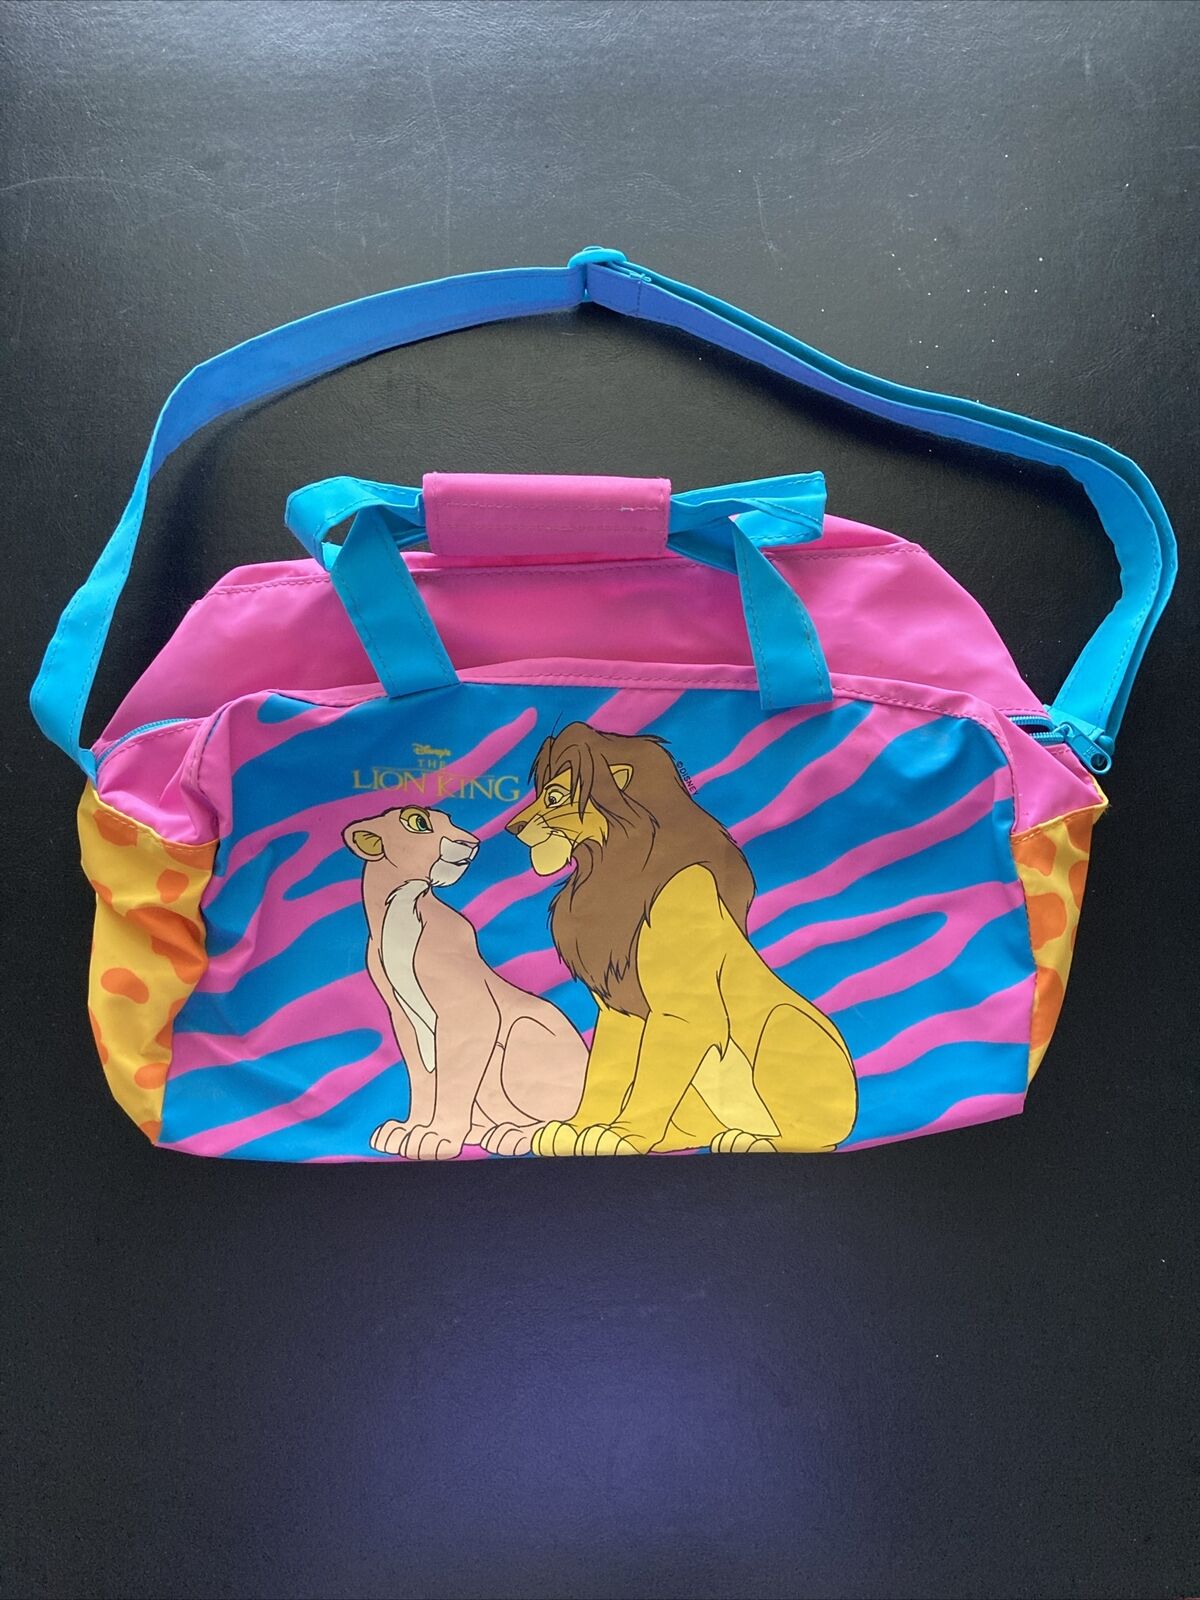 Vintage Disney The Lion King Blue Pink Duffle Sleepover Bag Simba Nala 13x8”